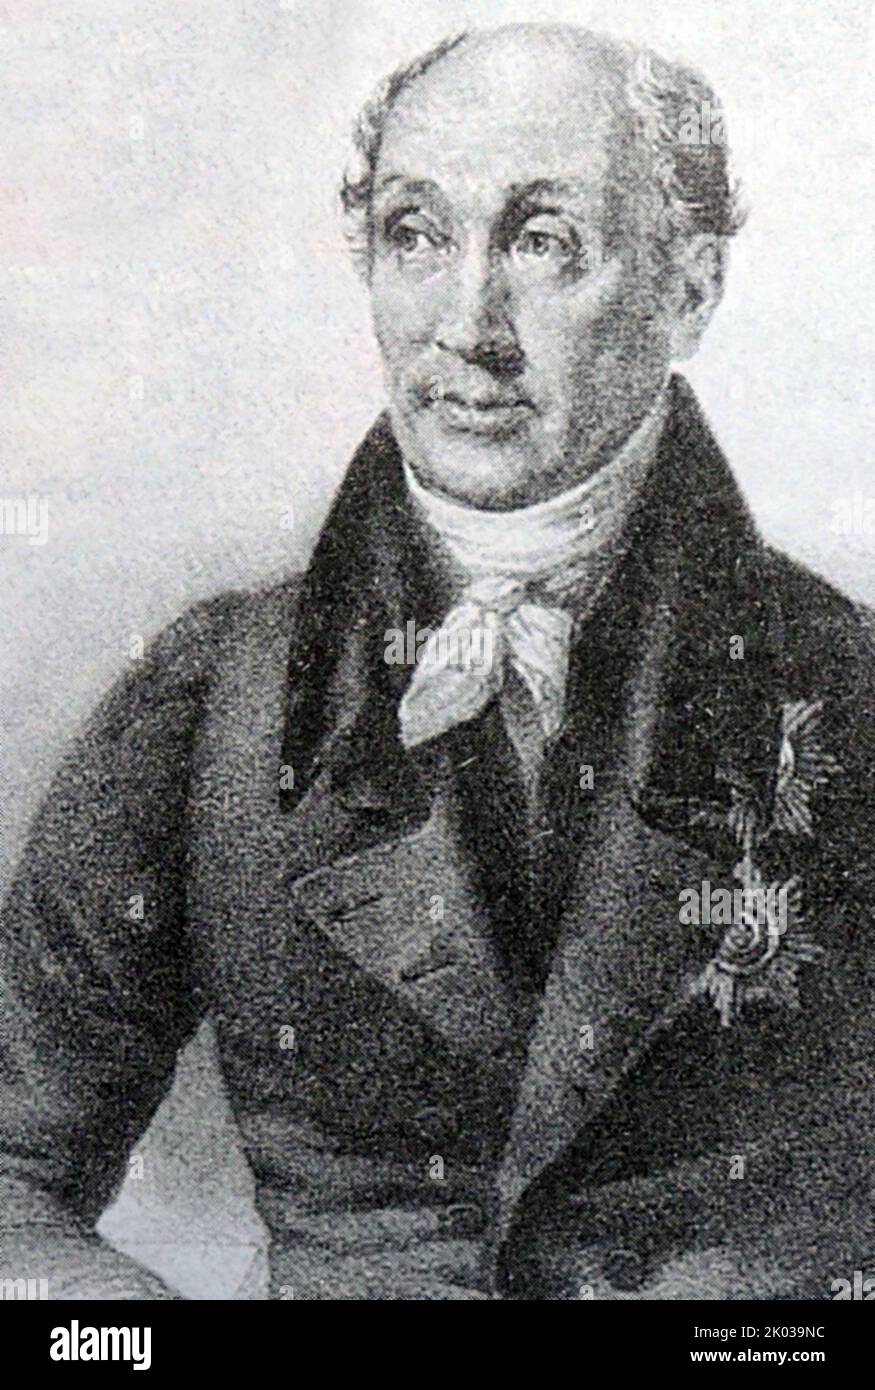 Le comte Mikhail Mikhaïlovich Speransky (1772 - 1839) était un réformiste russe sous le règne d'Alexandre Ier de Russie, à qui il était un conseiller proche. Plus tard, il a servi sous le tsar Nicholas I de Russie. Speransky est appelé le père du libéralisme russe. Banque D'Images